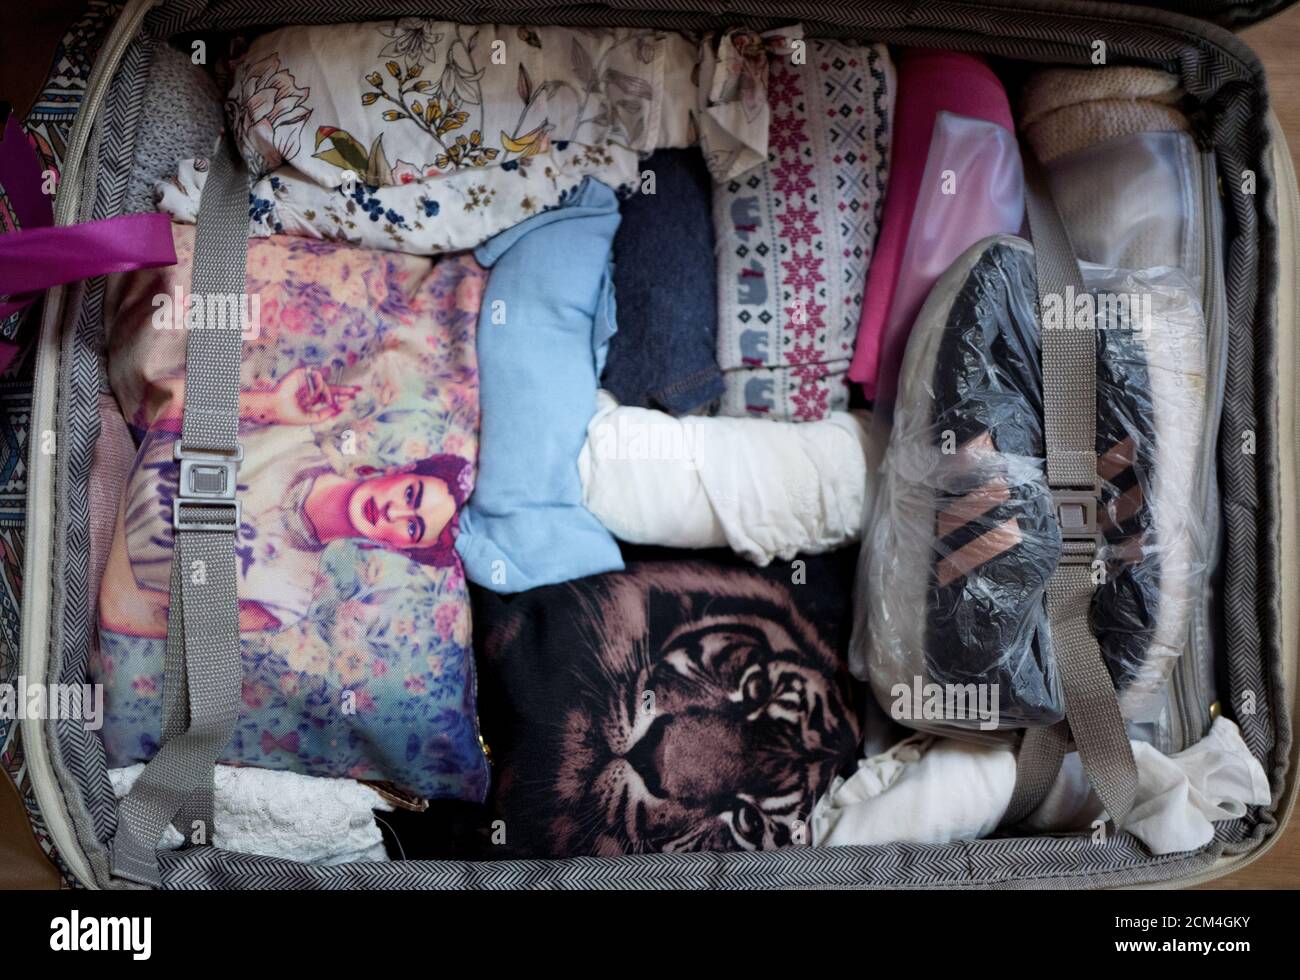 Ropa y zapatos pertenecientes a Areelis Morales, de 30 años, se embalan en  una maleta para su traslado a España, en Caracas, Venezuela, el 9 de enero  de 2019. Hasta enero, José